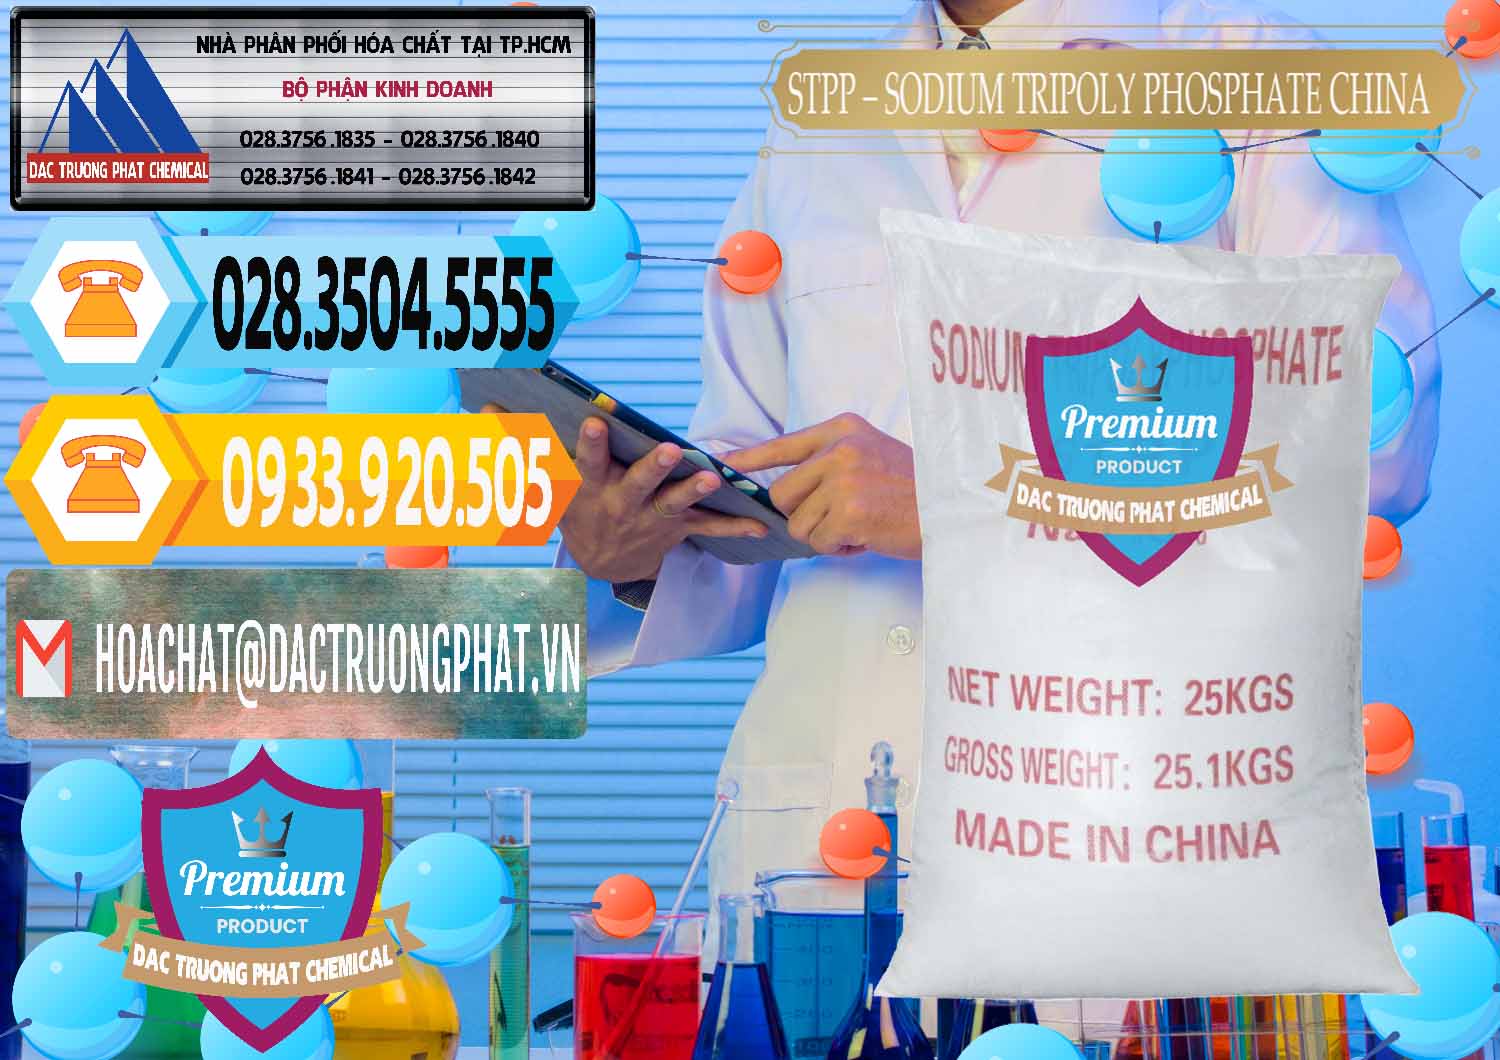 Nơi bán ( cung ứng ) Sodium Tripoly Phosphate - STPP 96% Chữ Đỏ Trung Quốc China - 0155 - Công ty cung ứng & phân phối hóa chất tại TP.HCM - hoachattayrua.net